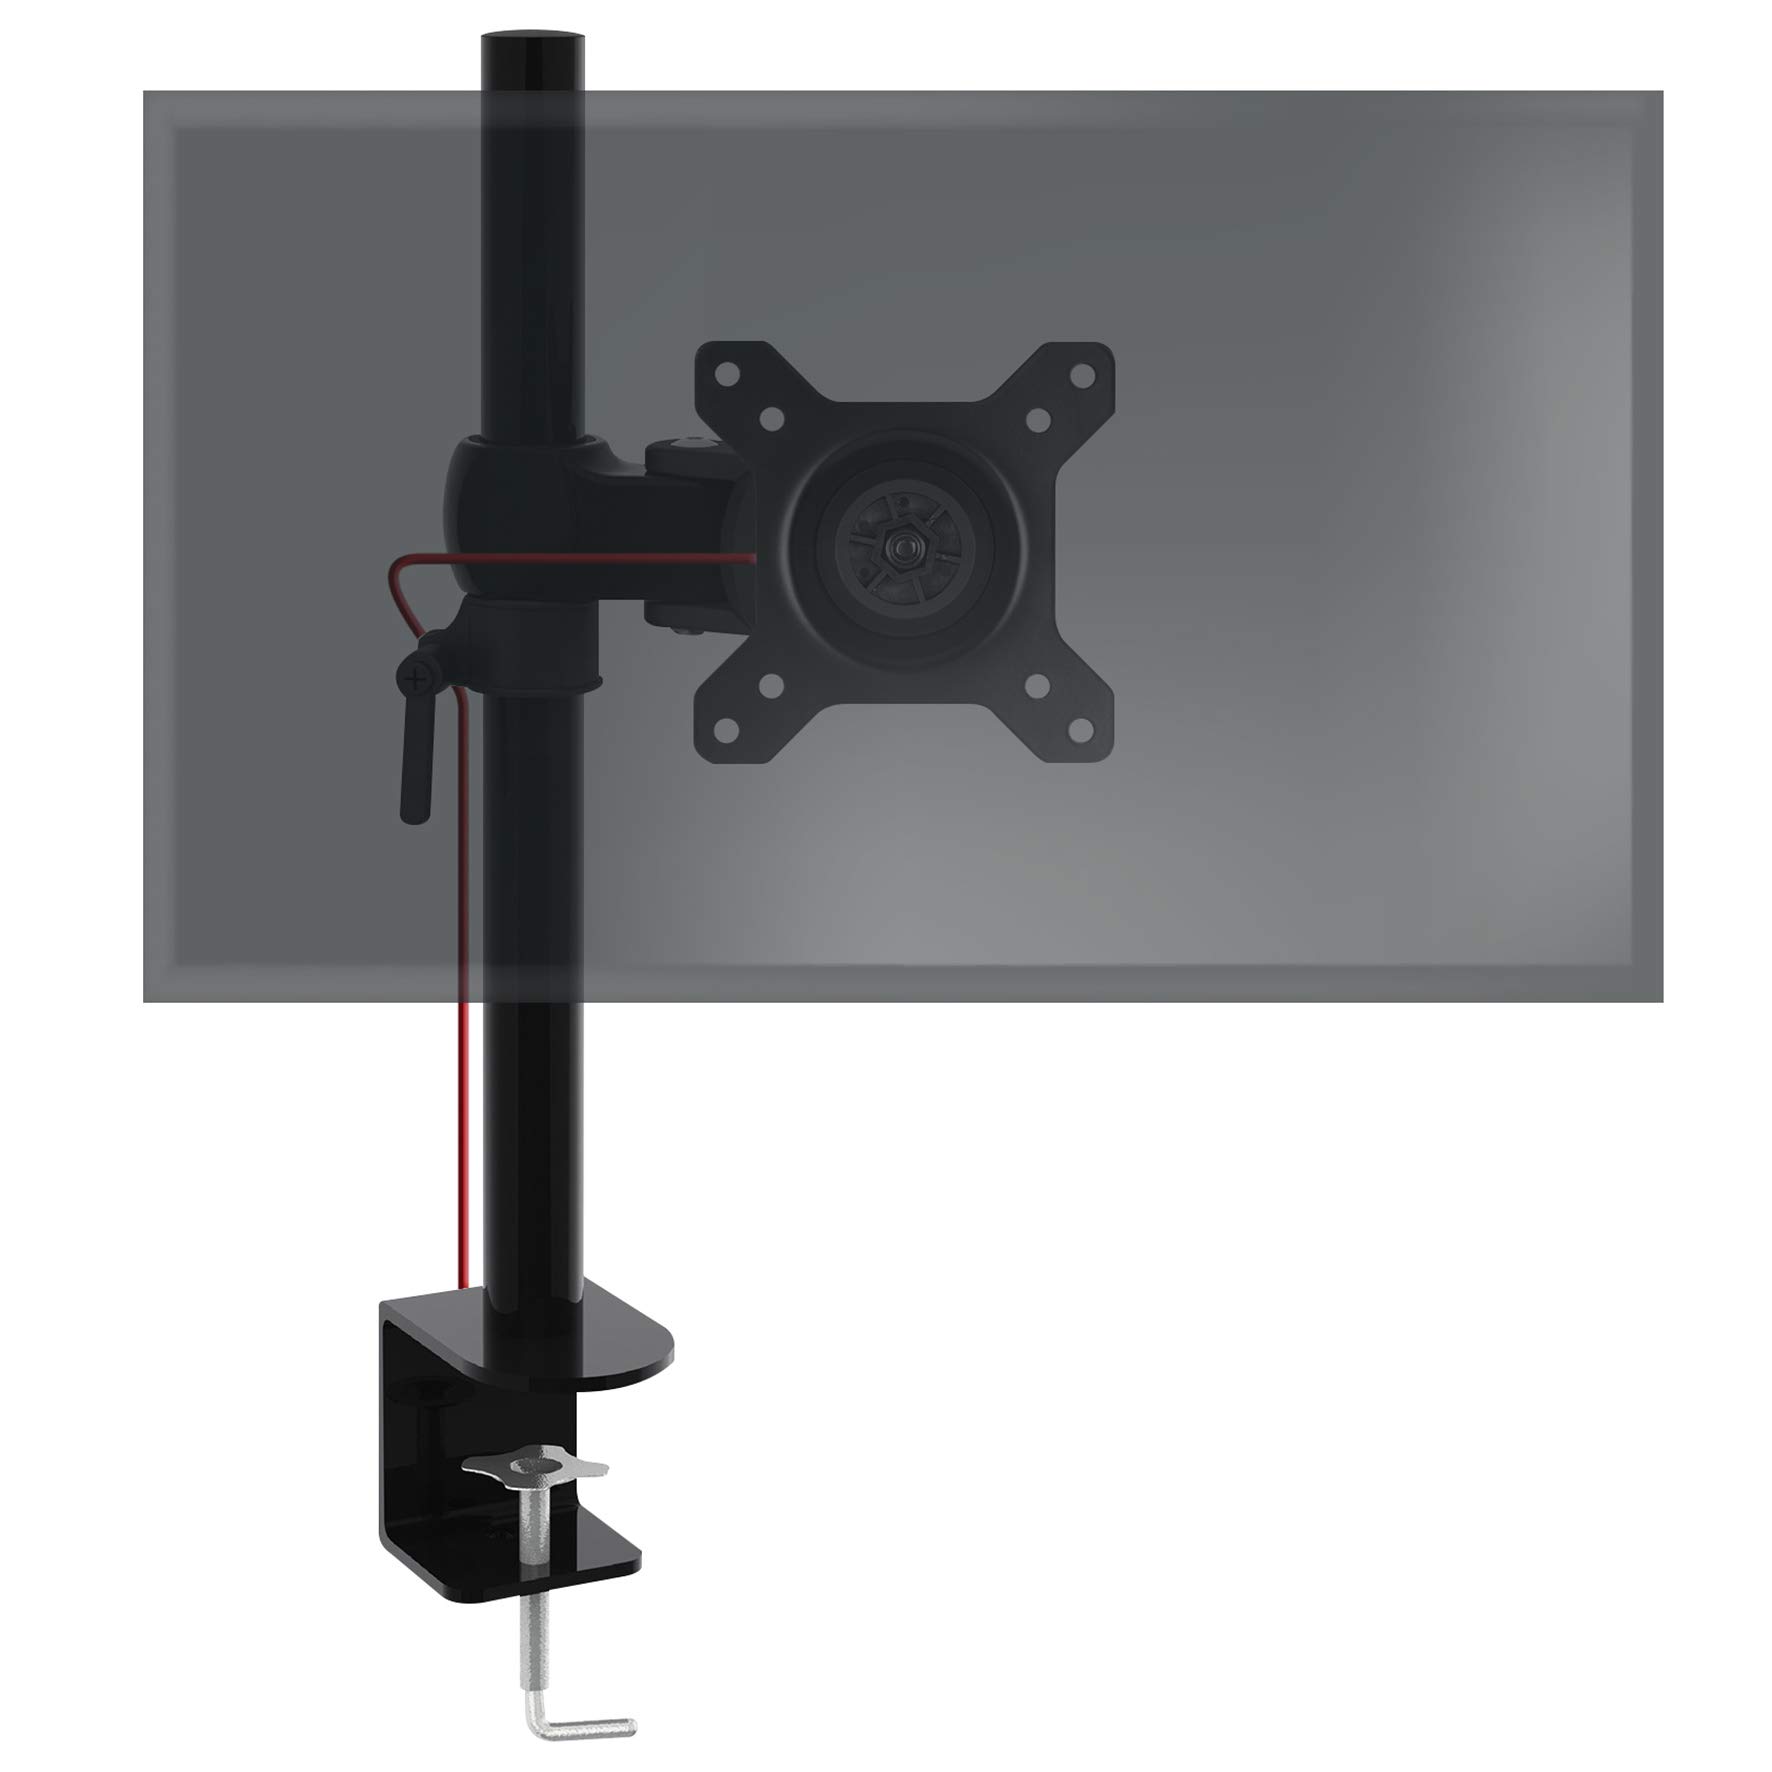 Duronic DM351X1 Monitorarm | Monitor Halterung Bildschirme bis 27" Zoll | LCD LED Display Ständer bis 10 kg | Höhenverstellbar | Neigbar -15° bis +15° | Drehbar 360° | Monitorhalterung Arm VESA